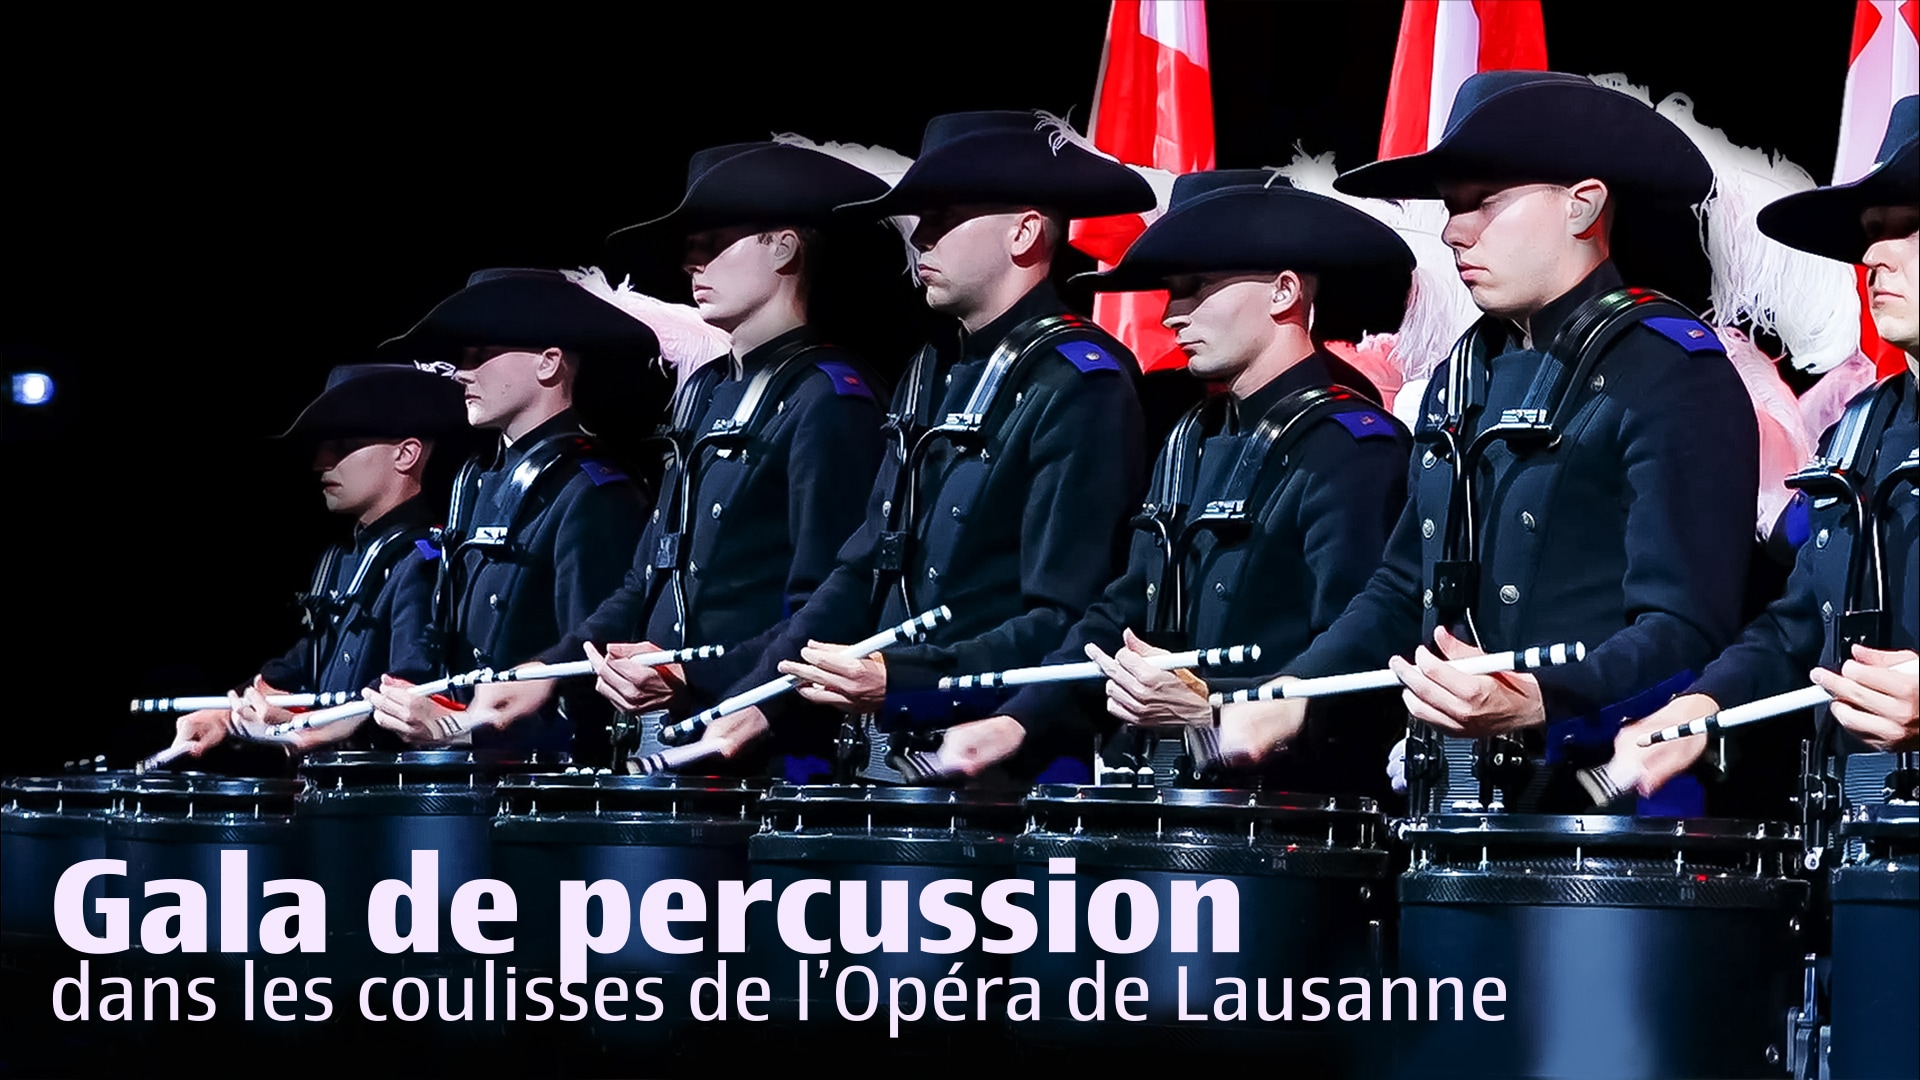 Gala de Percussion, dans les coulisses de l’Opéra de Lausanne.